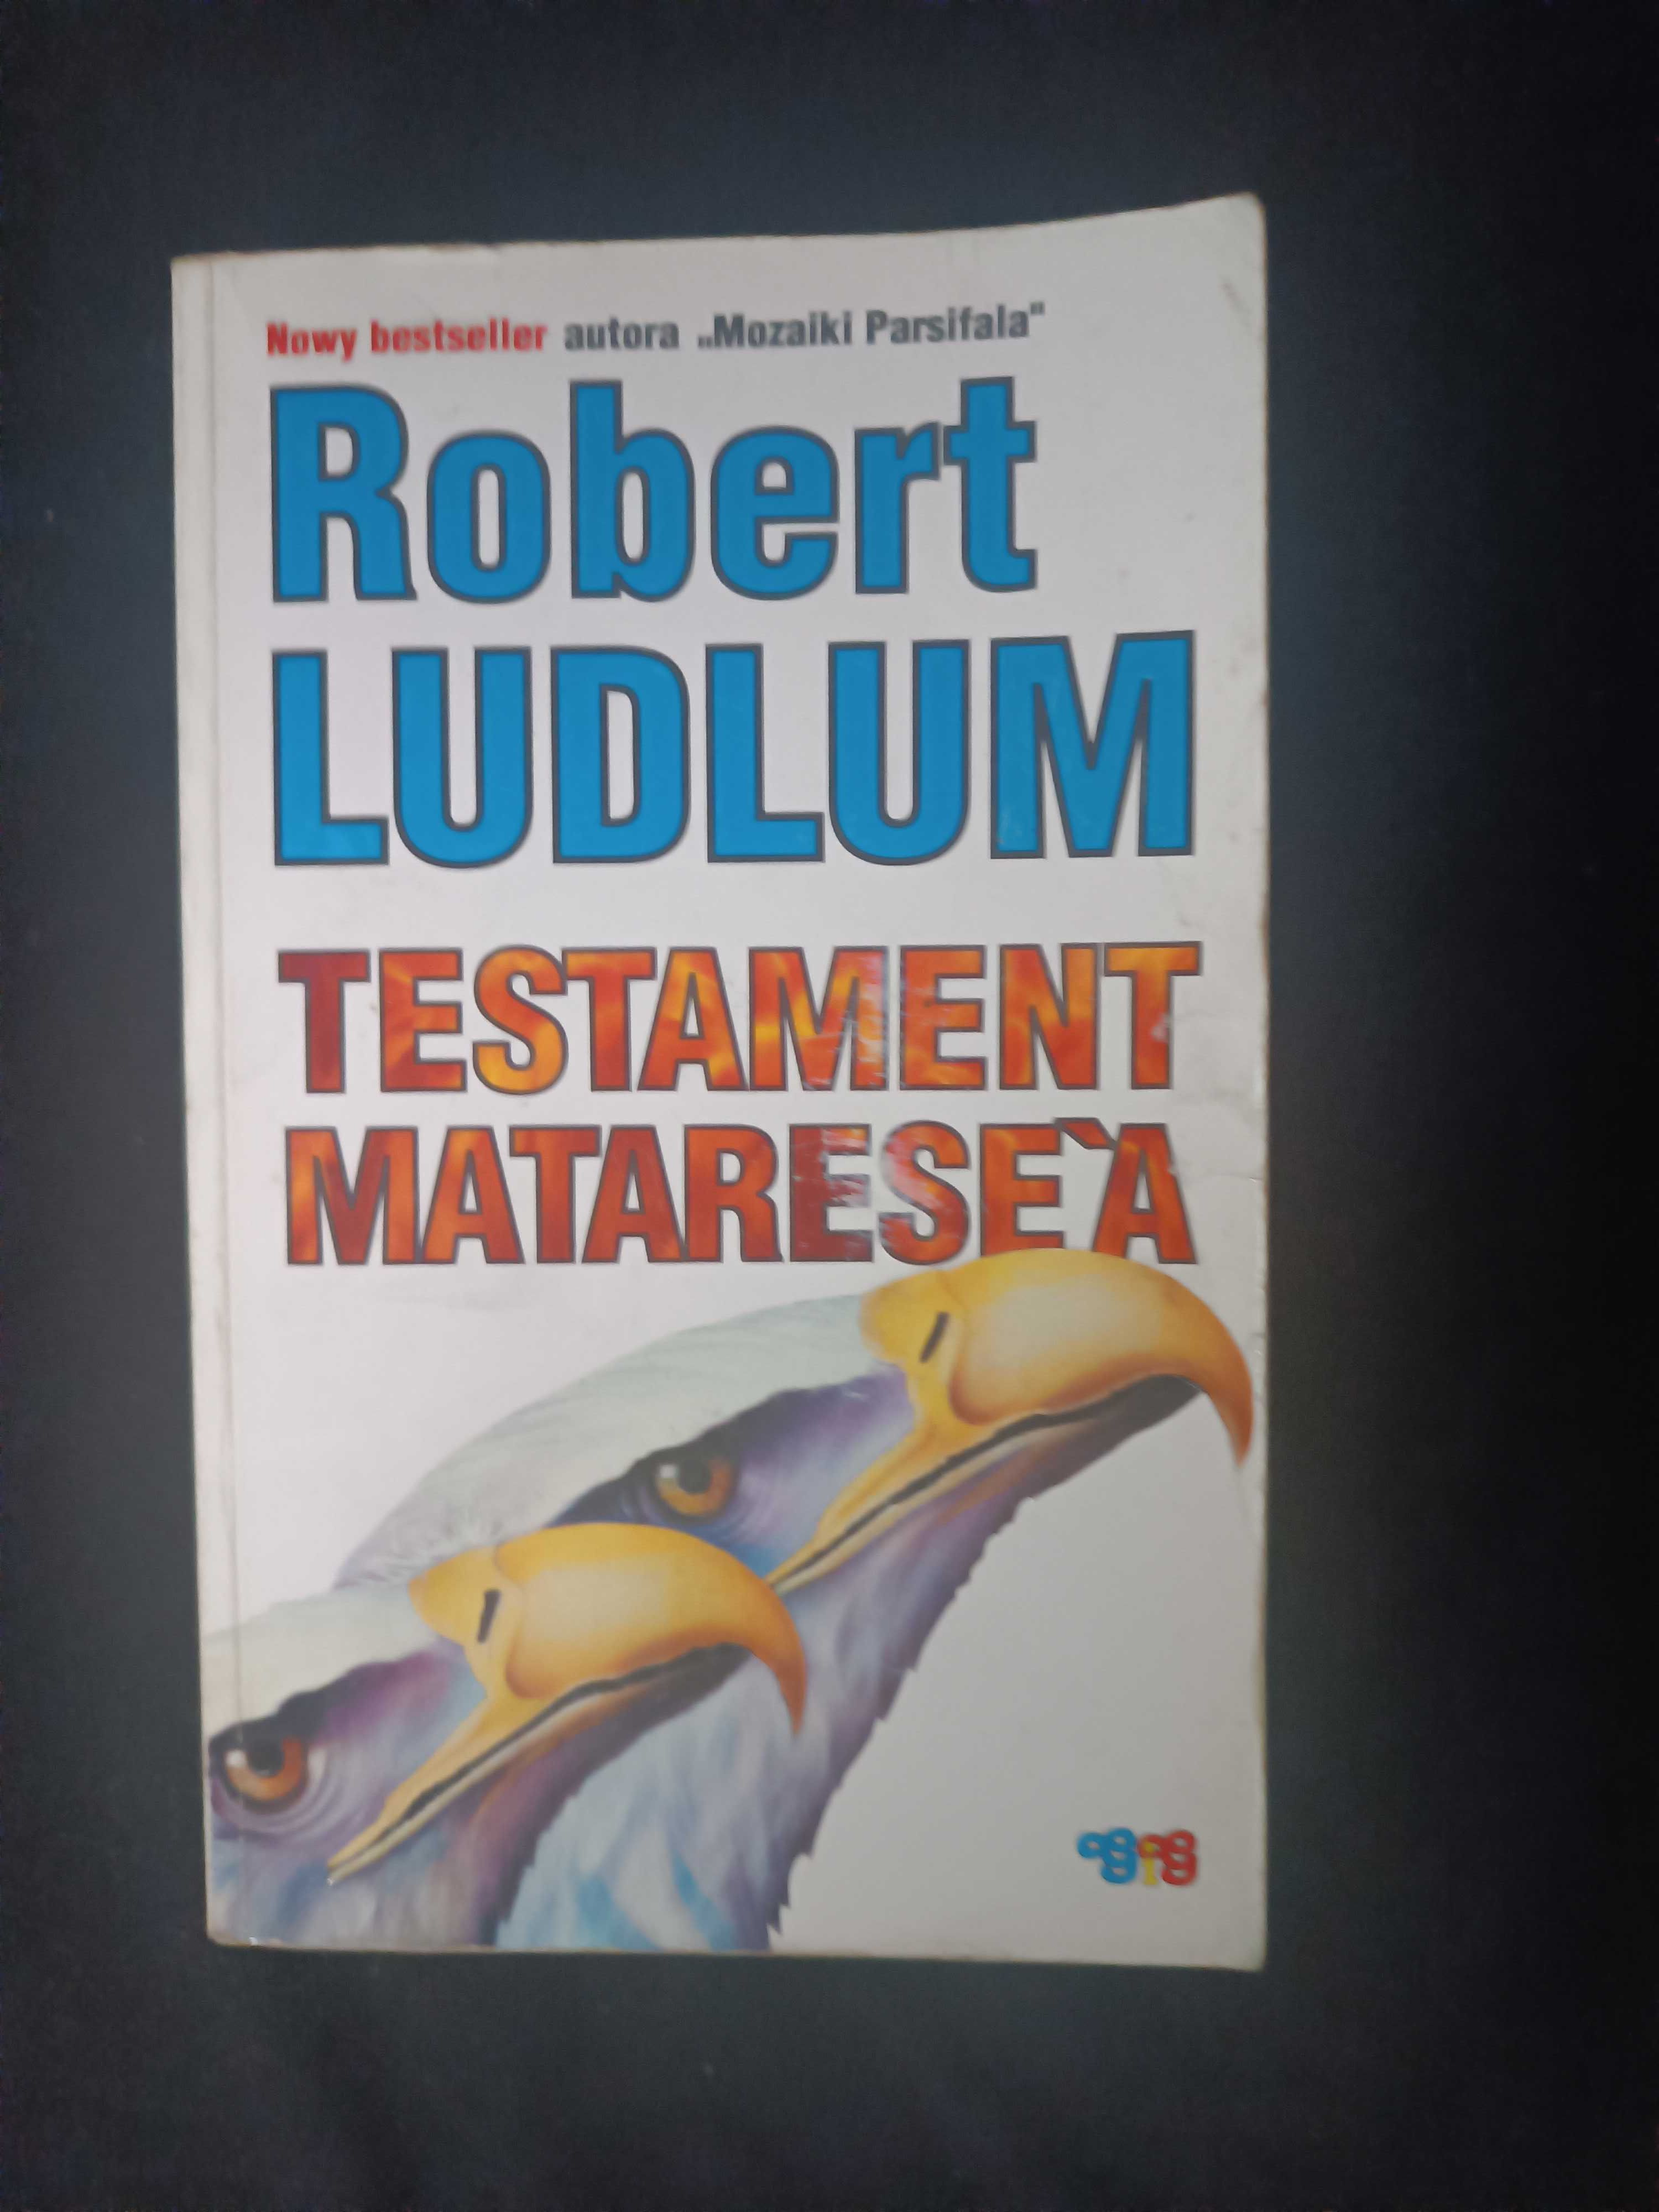 Testament Matarese'a, Robert Ludlum